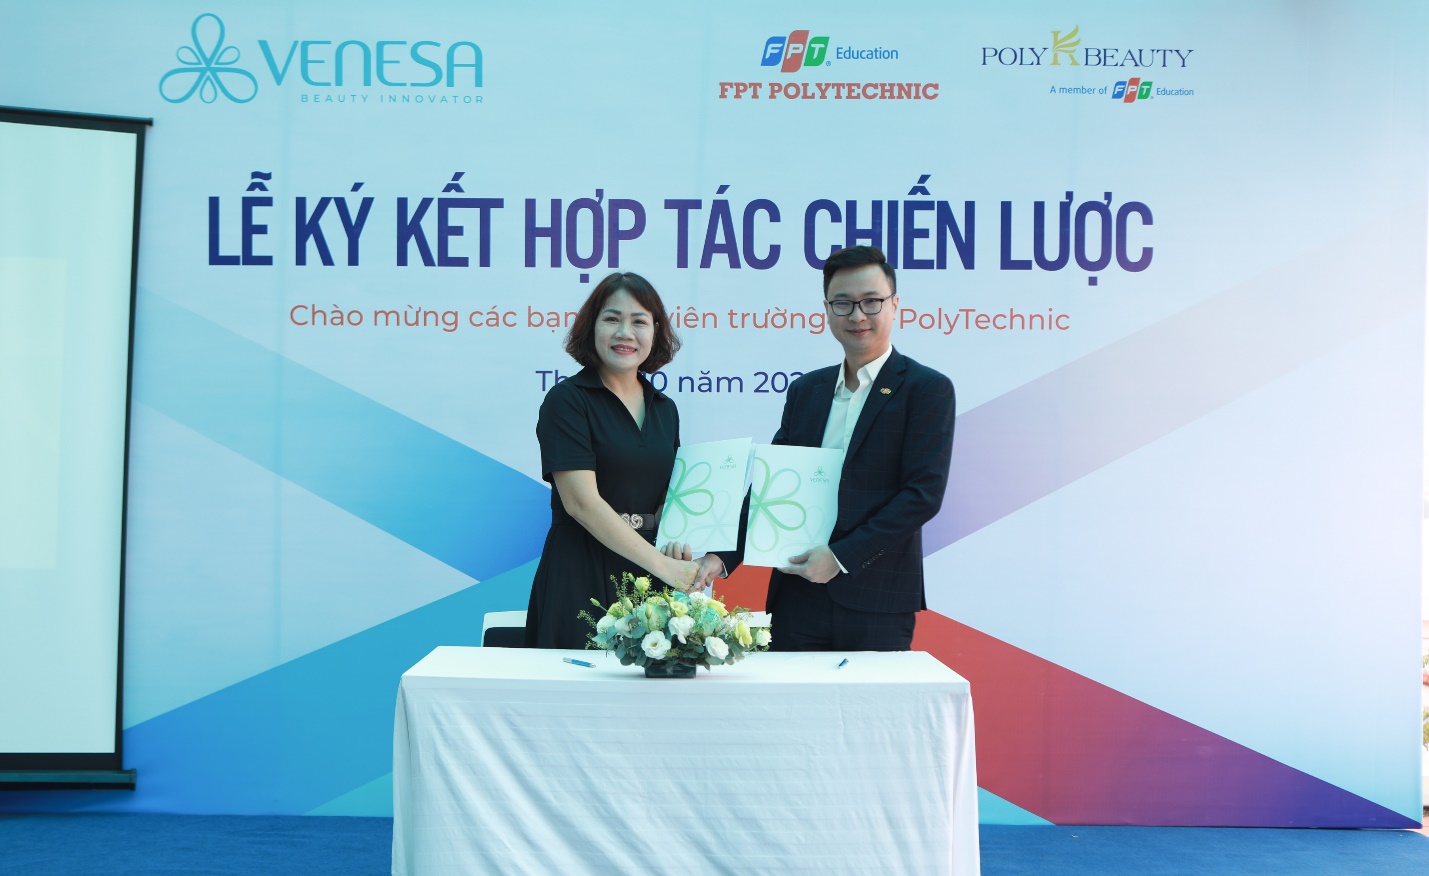 Bà Lê Thị Thanh Mai, Giám đốc ban Nhân sự và Dịch vụ tổng hợp Venesa Việt Nam và ông Lê Quốc Nam, Trưởng ban Tuyển sinh Cao đẳng FPT Polytechnic ký thỏa thuận hợp tác